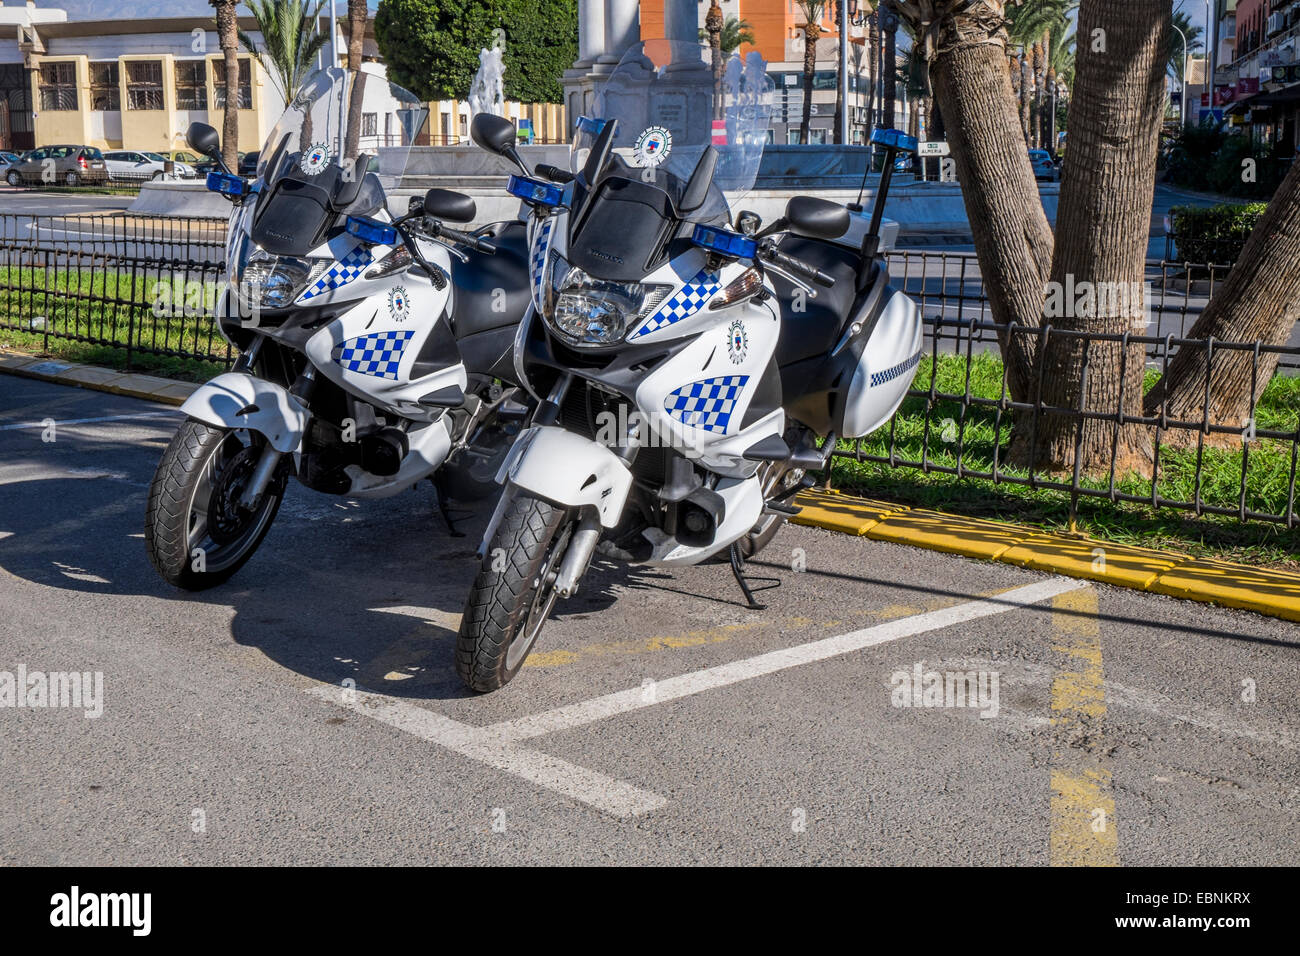 Zwei spanische Polizei Motorräder geparkt außerhalb der örtlichen Polizeidienststelle Stockfoto